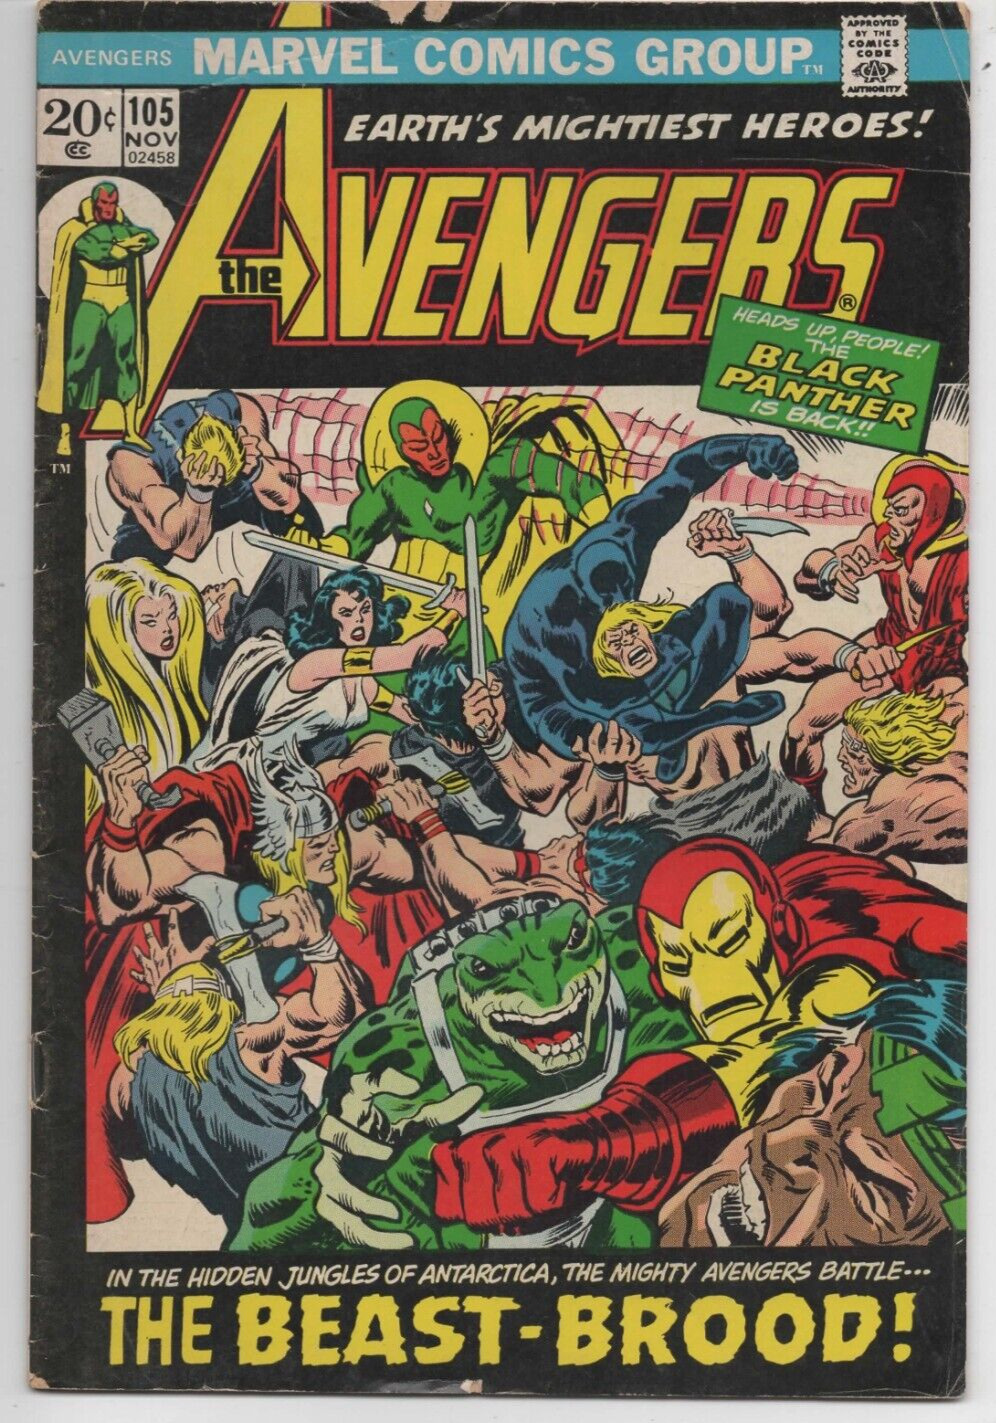 THE AVENGERS, Marvel Comics #105 Nov. 1972